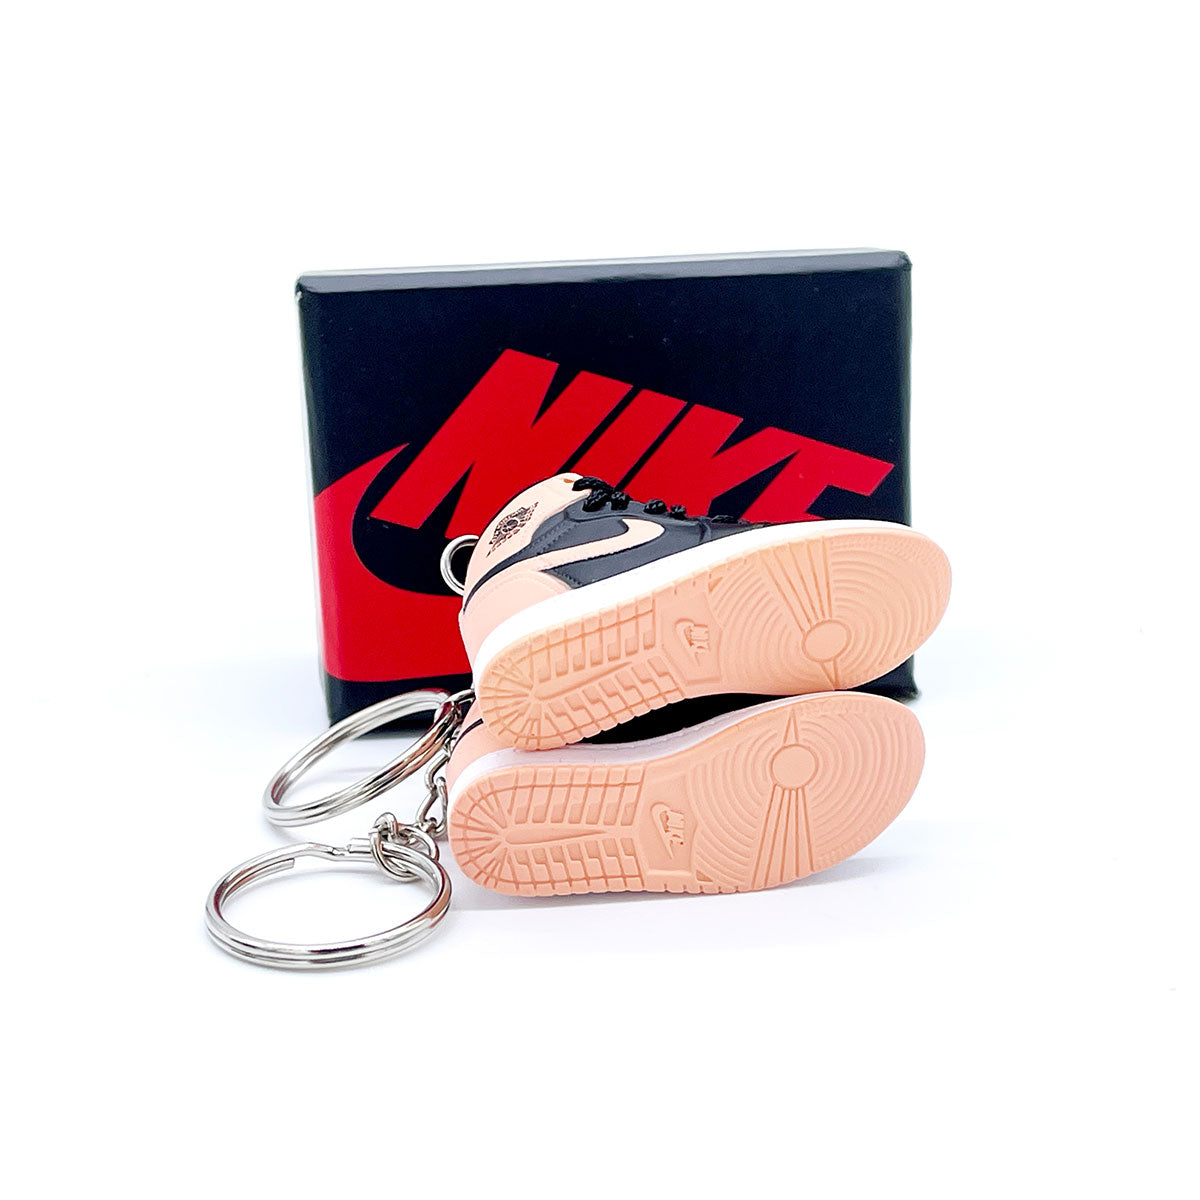 3D Sneaker Keychain- Air Jordan 1 High Crimson Tint Pair